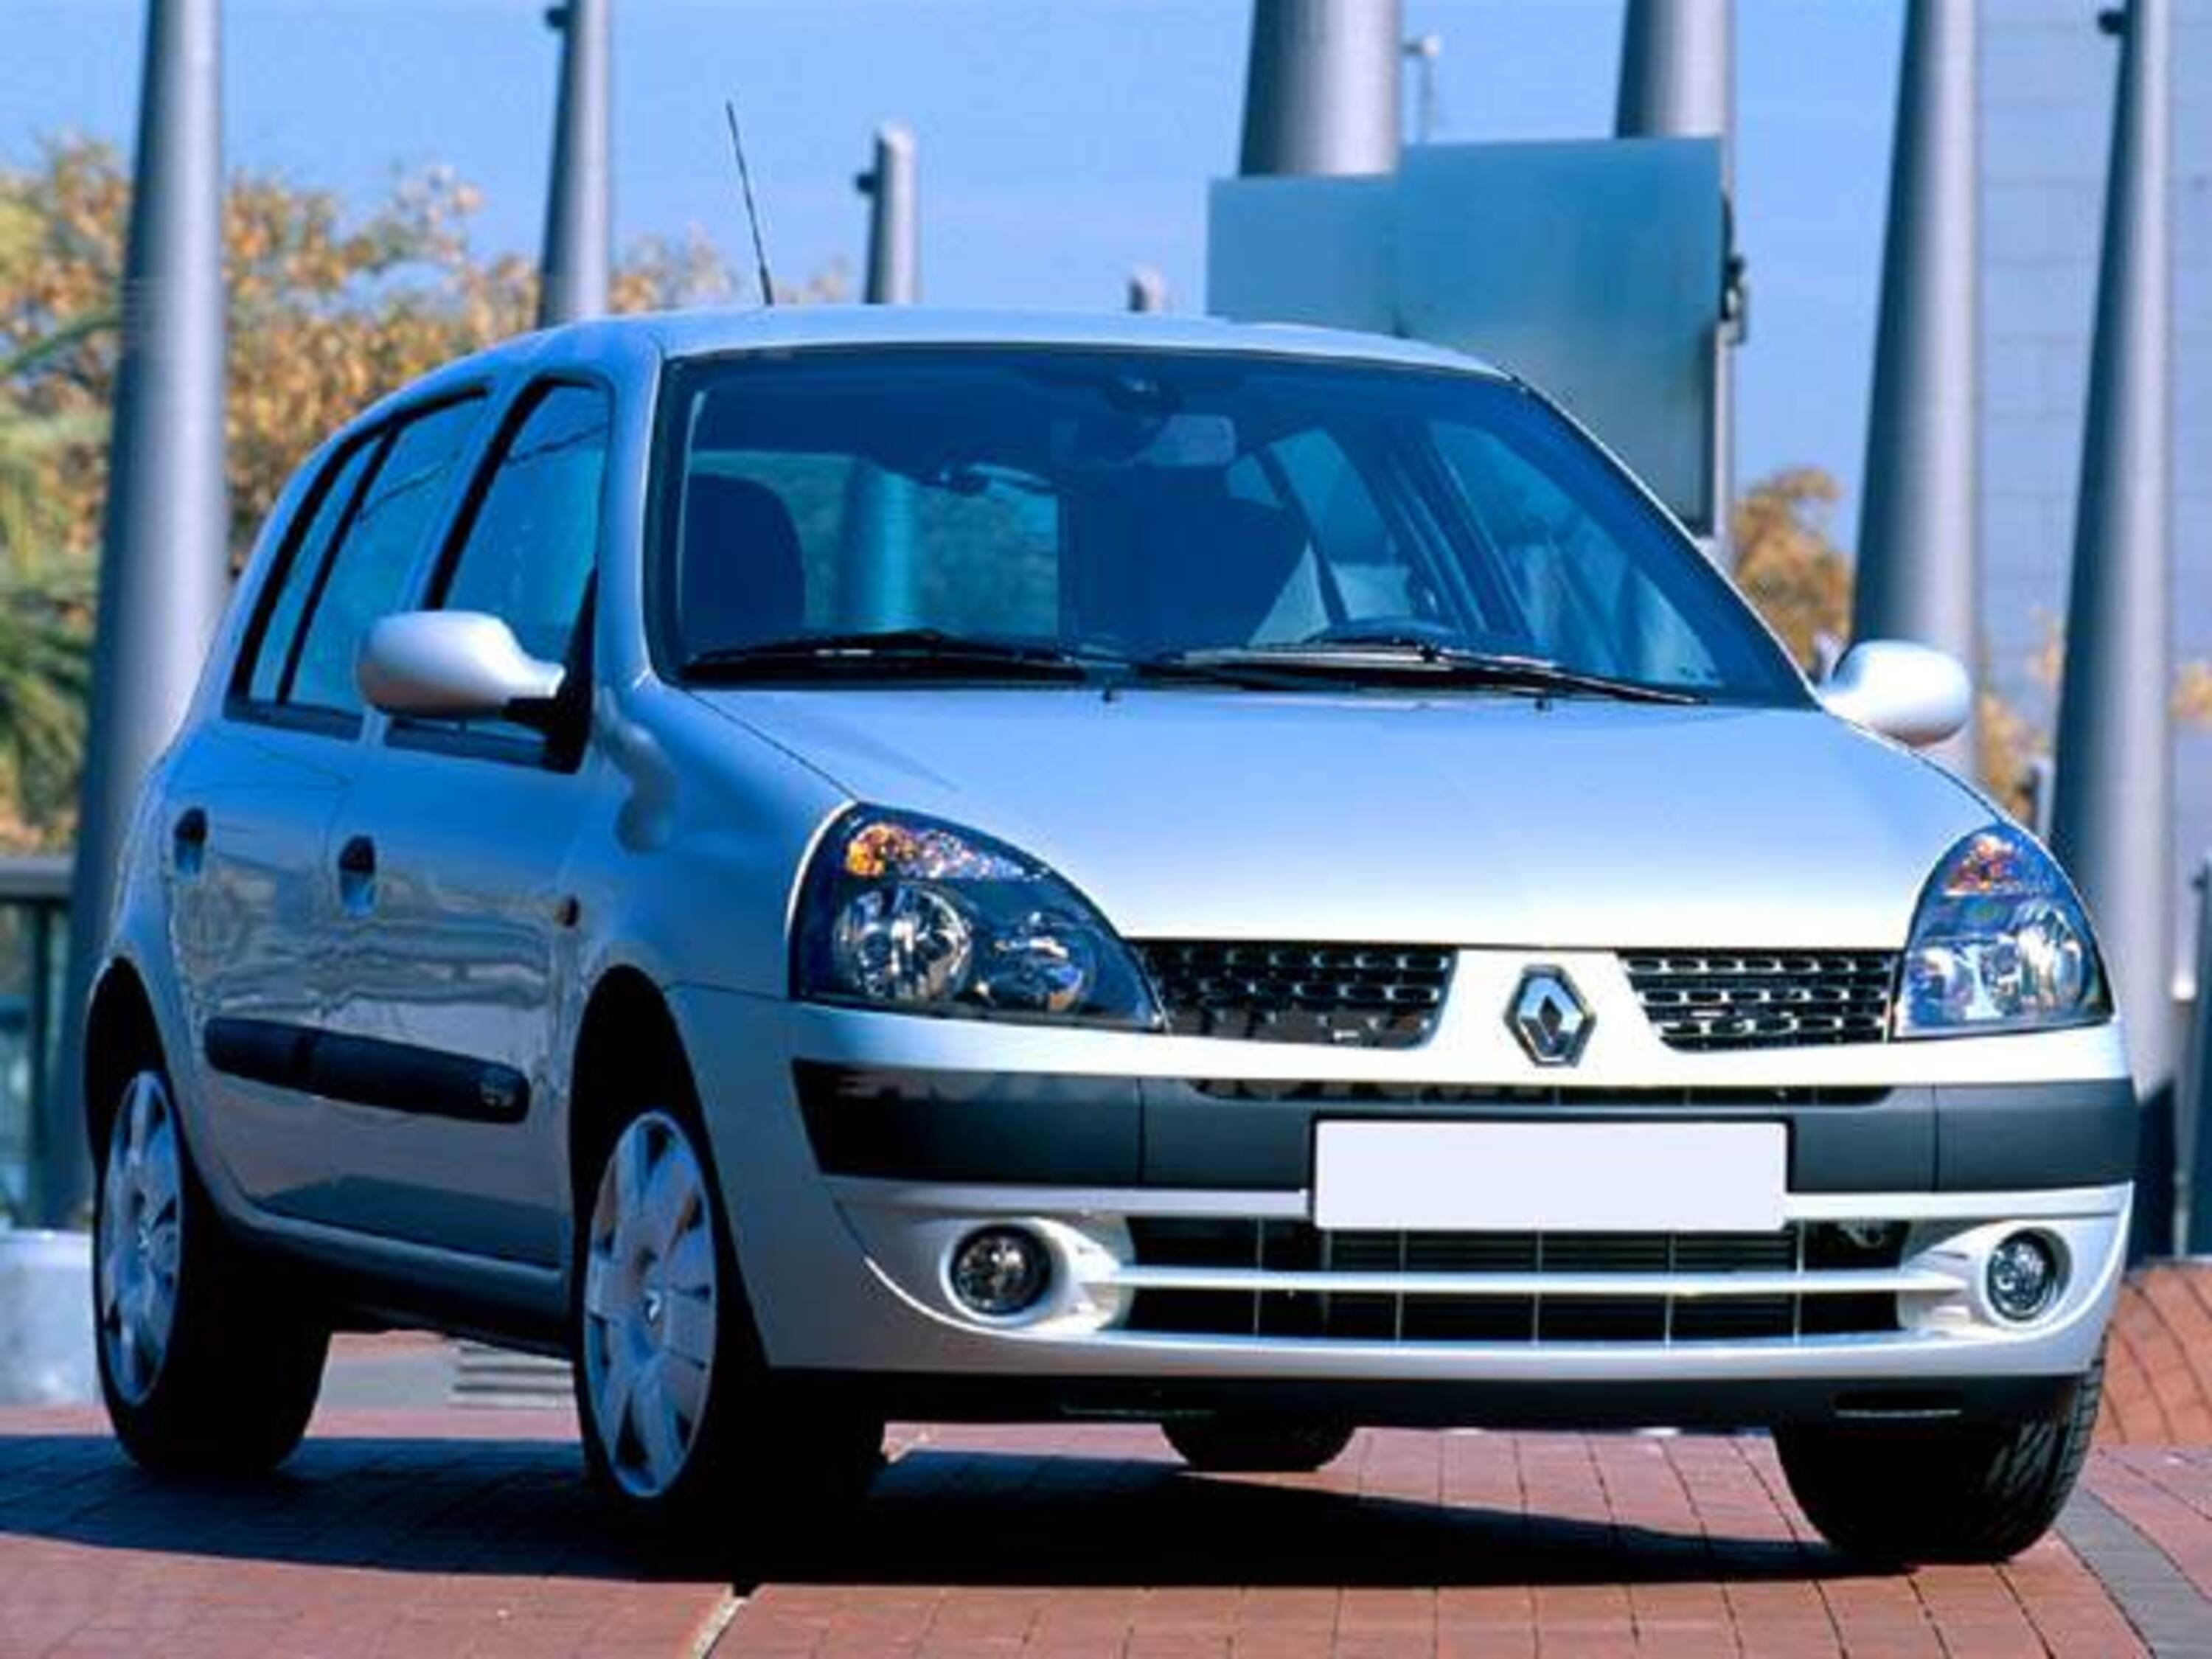 Renault Clio 1.5 dCi 100CV cat 5 porte Initiale